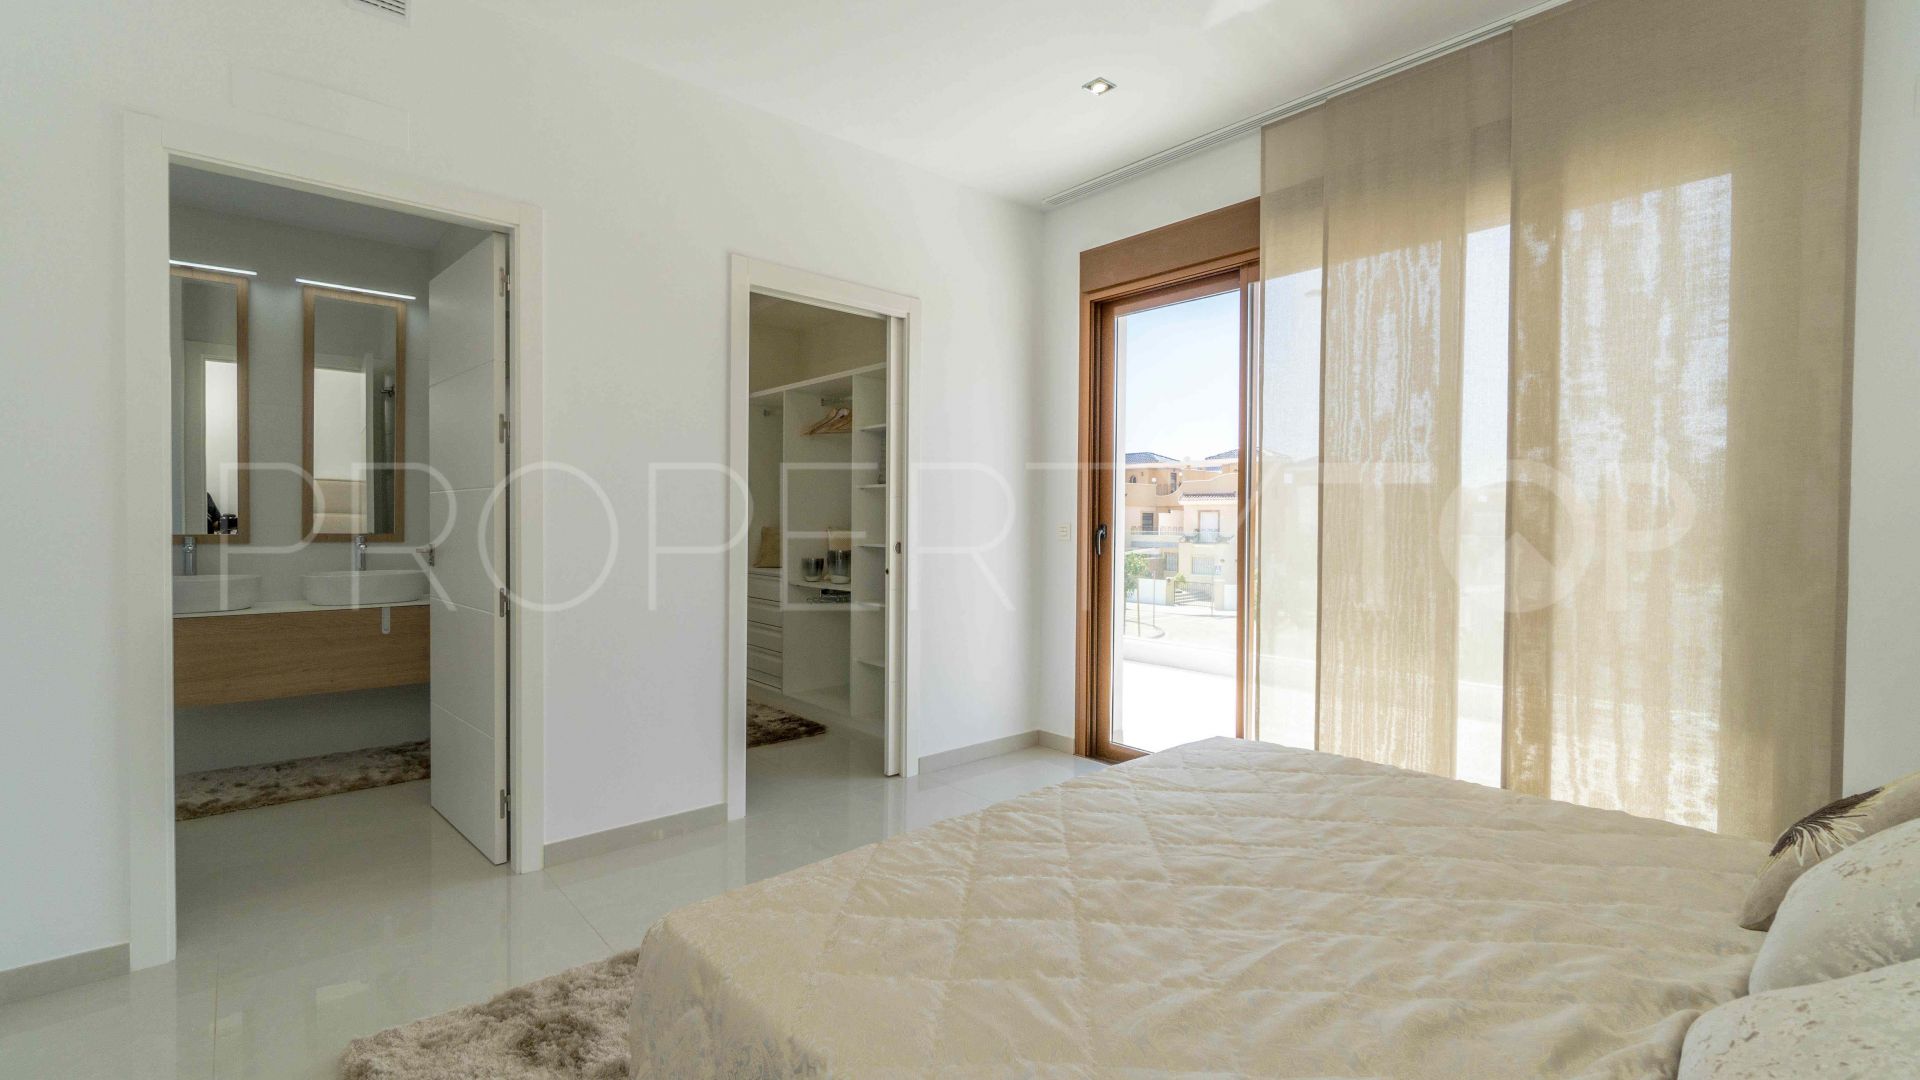 For sale villa in Torre de la Horadada with 3 bedrooms